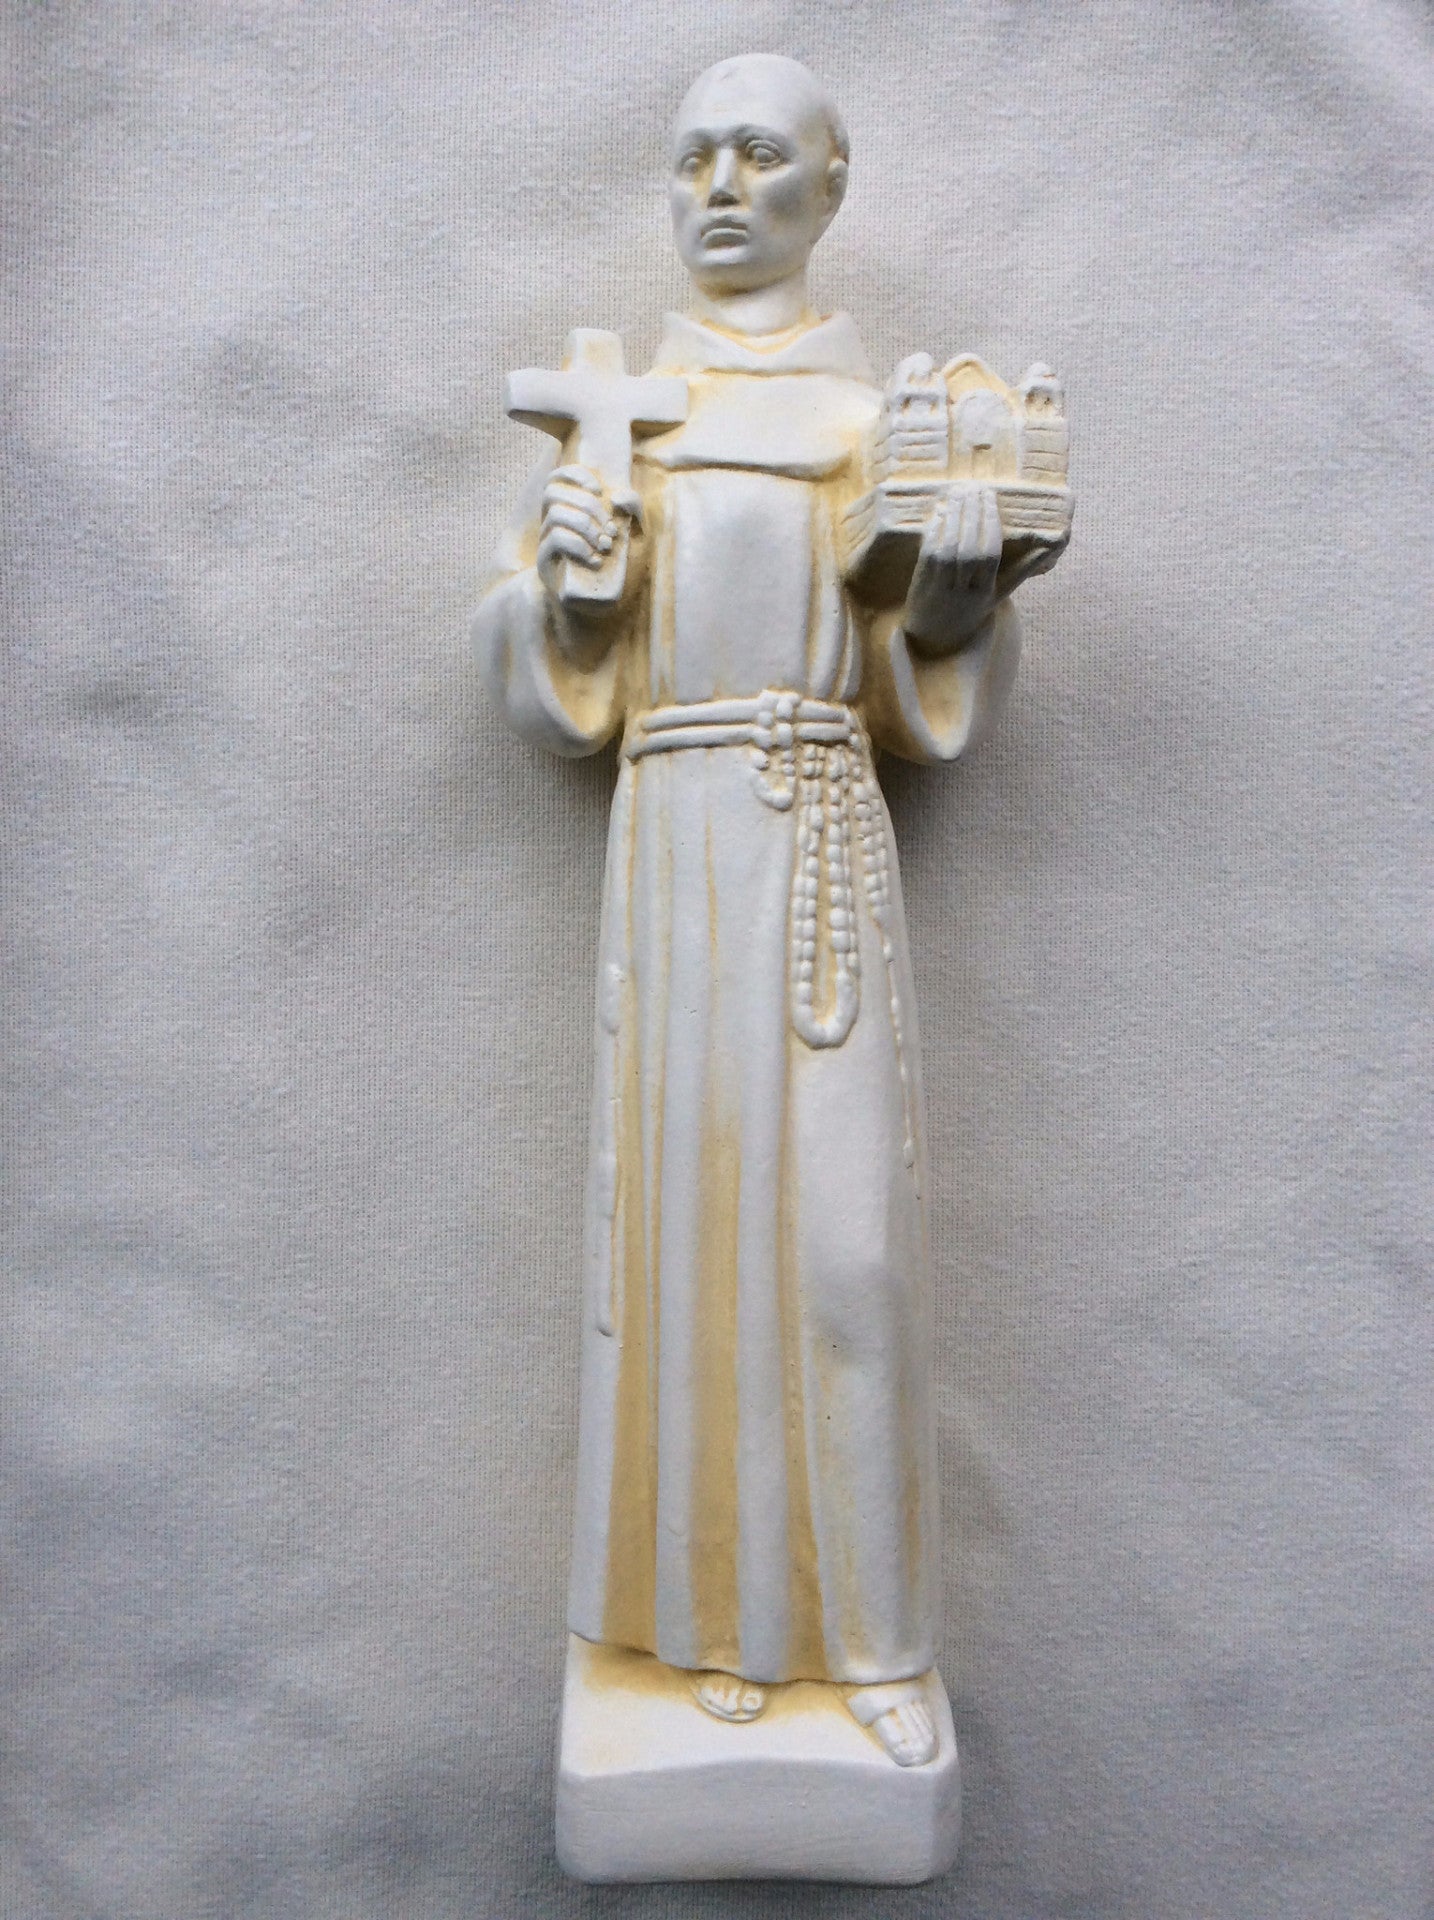 St. Father Juniper Serra Statue 12"